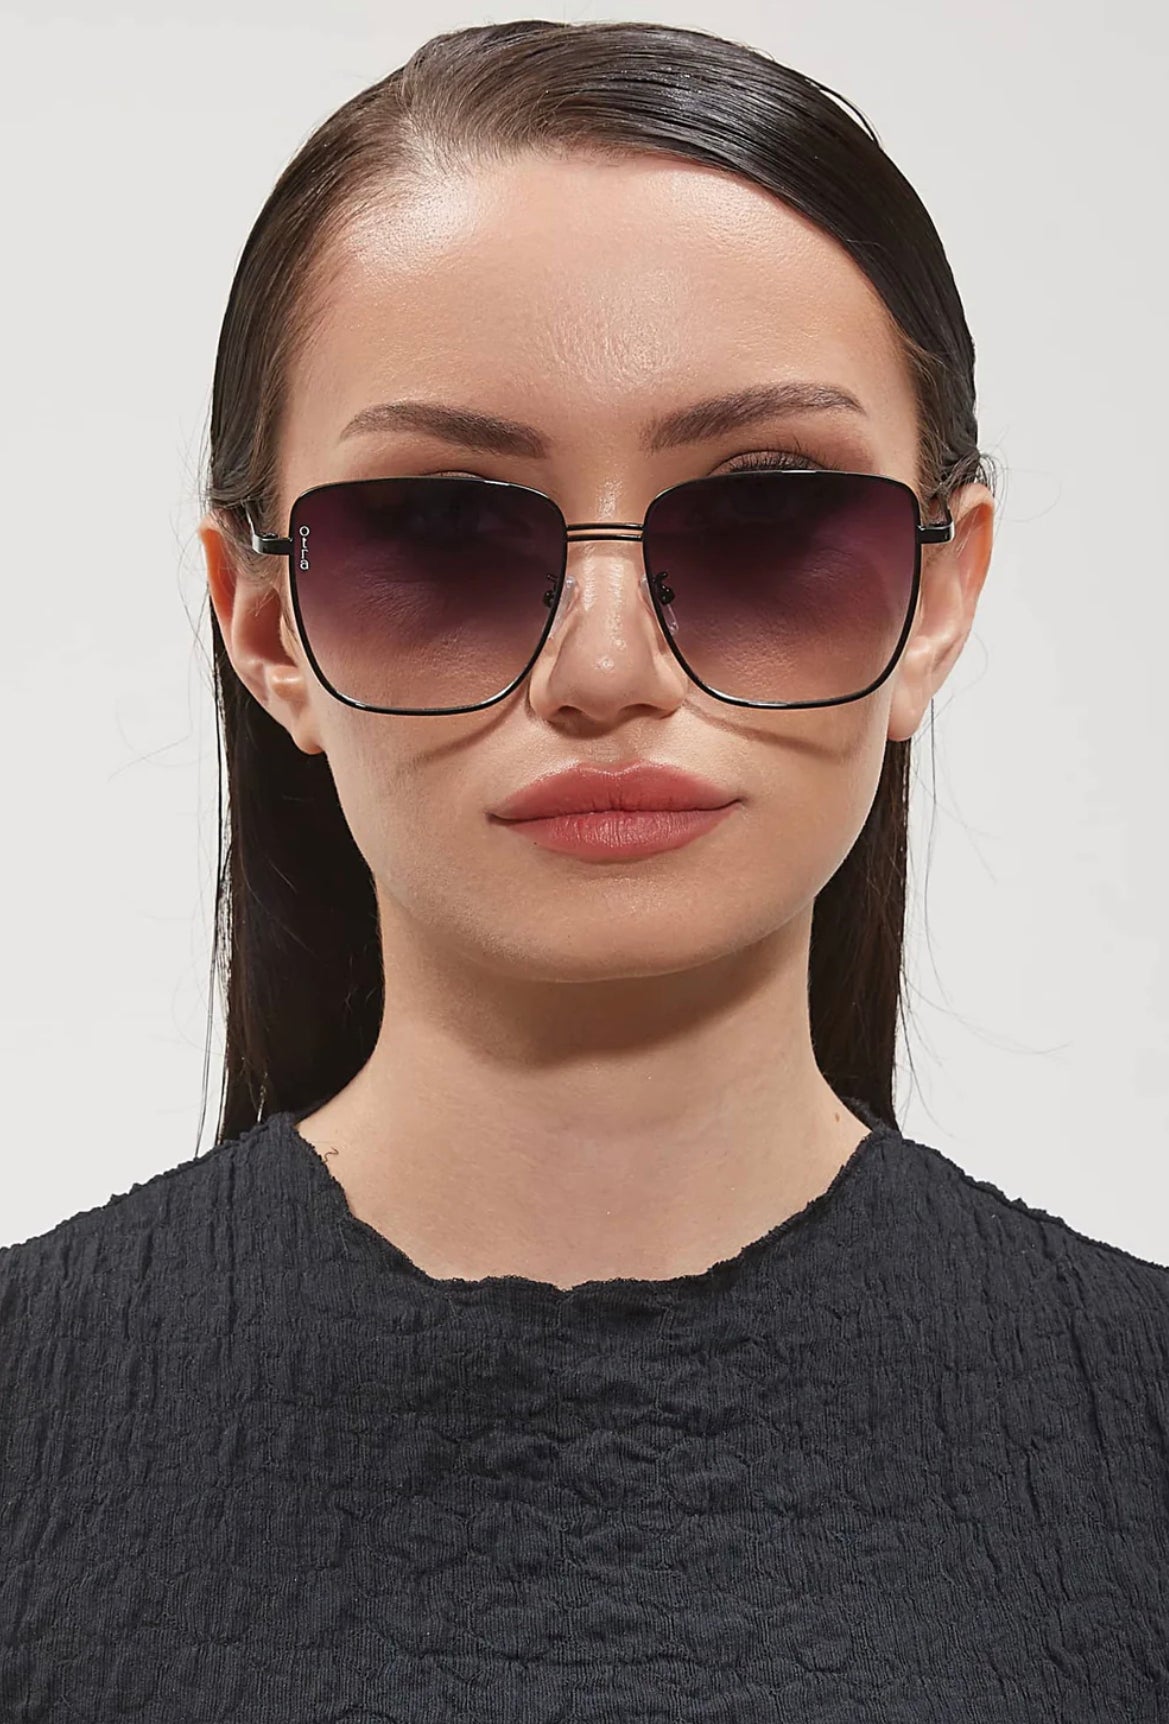 Ores Rita Black/Fade Sunglasses